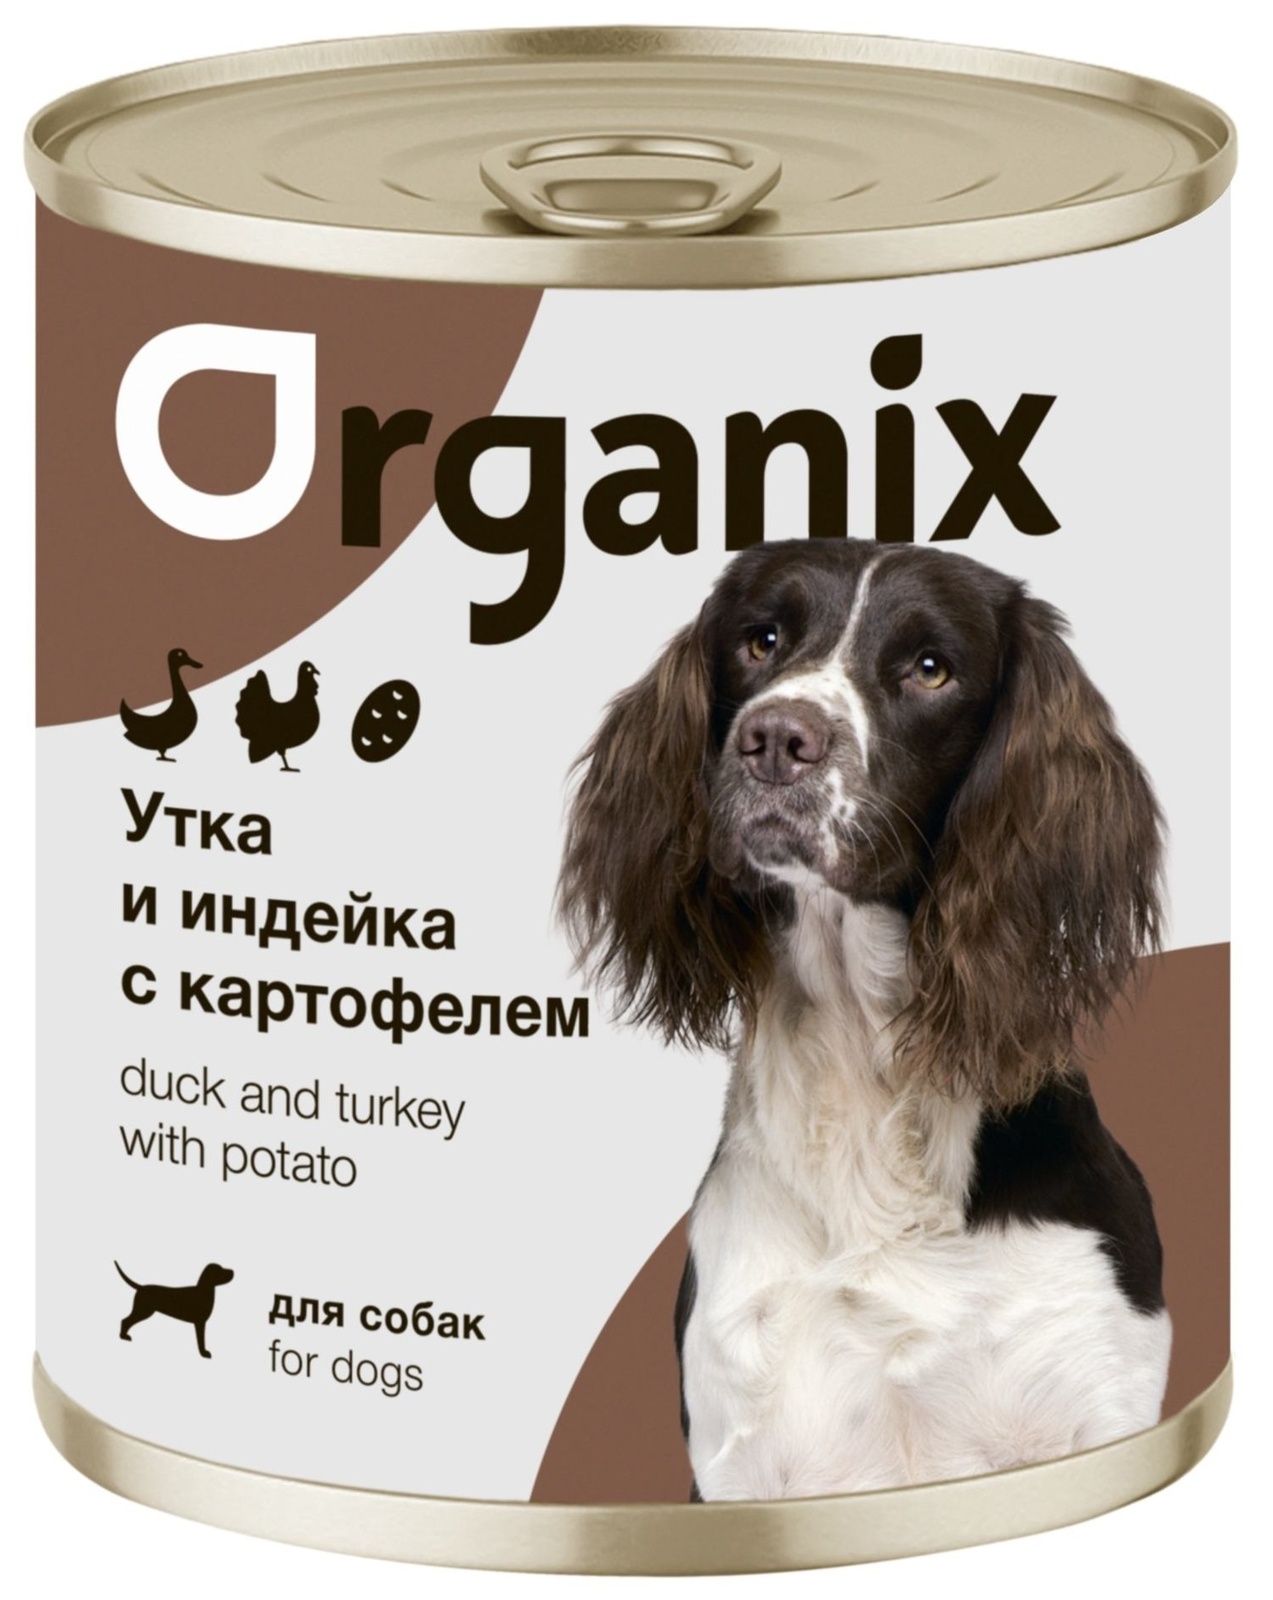 Organix консервы Organix консервы для собак Утка, индейка, картофель (400 г) organix консервы organix консервы для собак утка индейка картофель 400 г